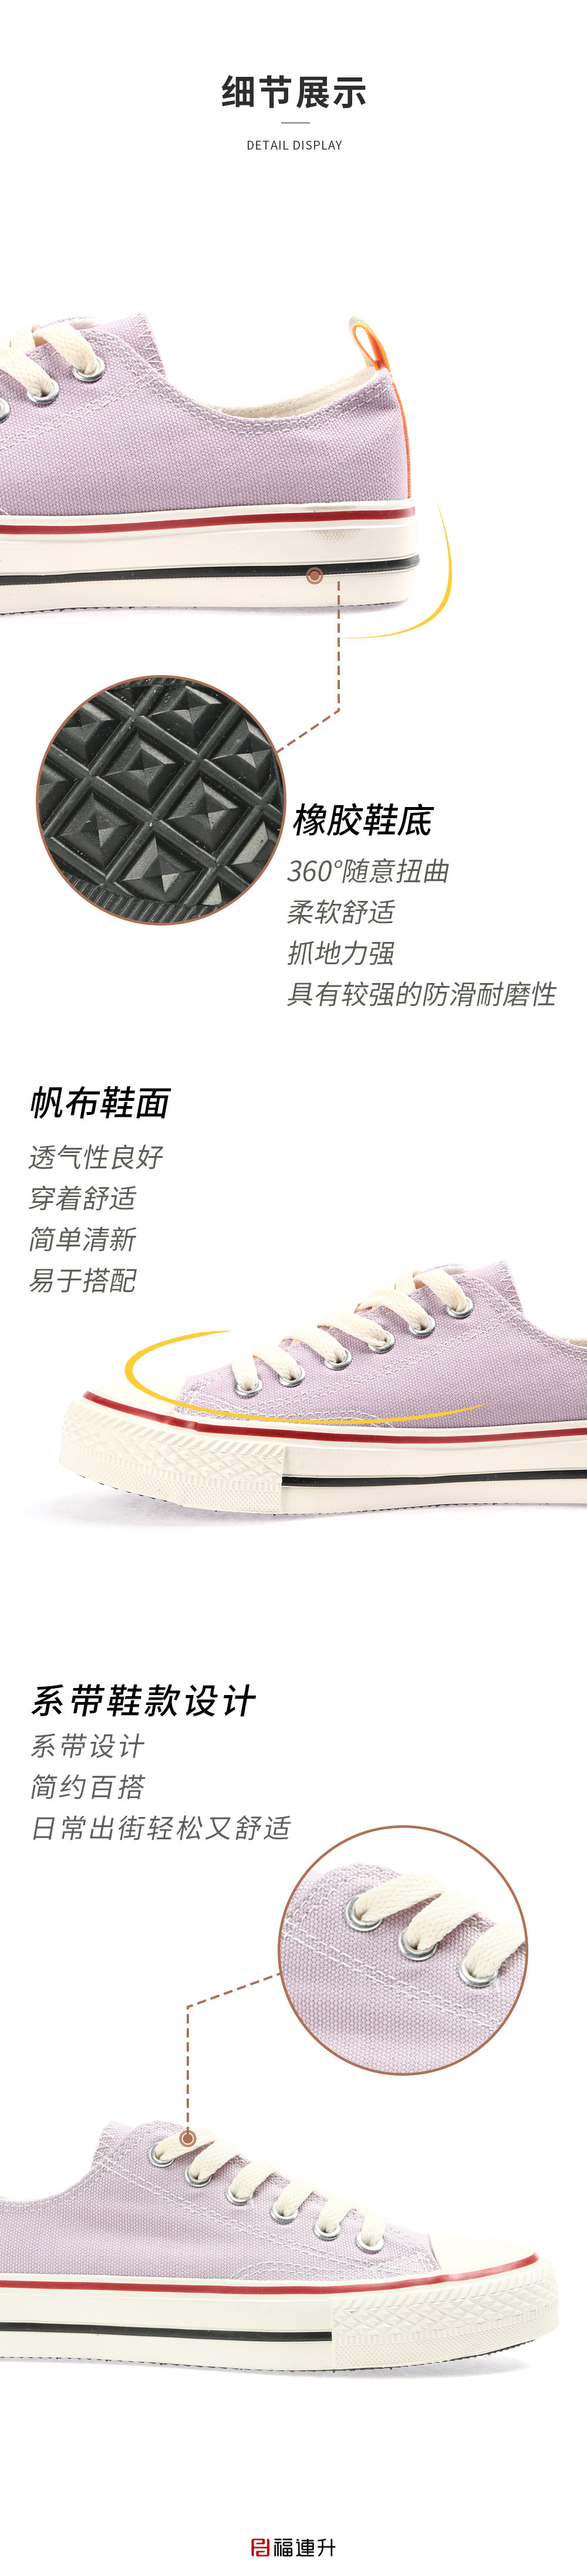 福连升帆布鞋小白鞋女夏季新款休闲鞋 舒适透气板鞋(图3)